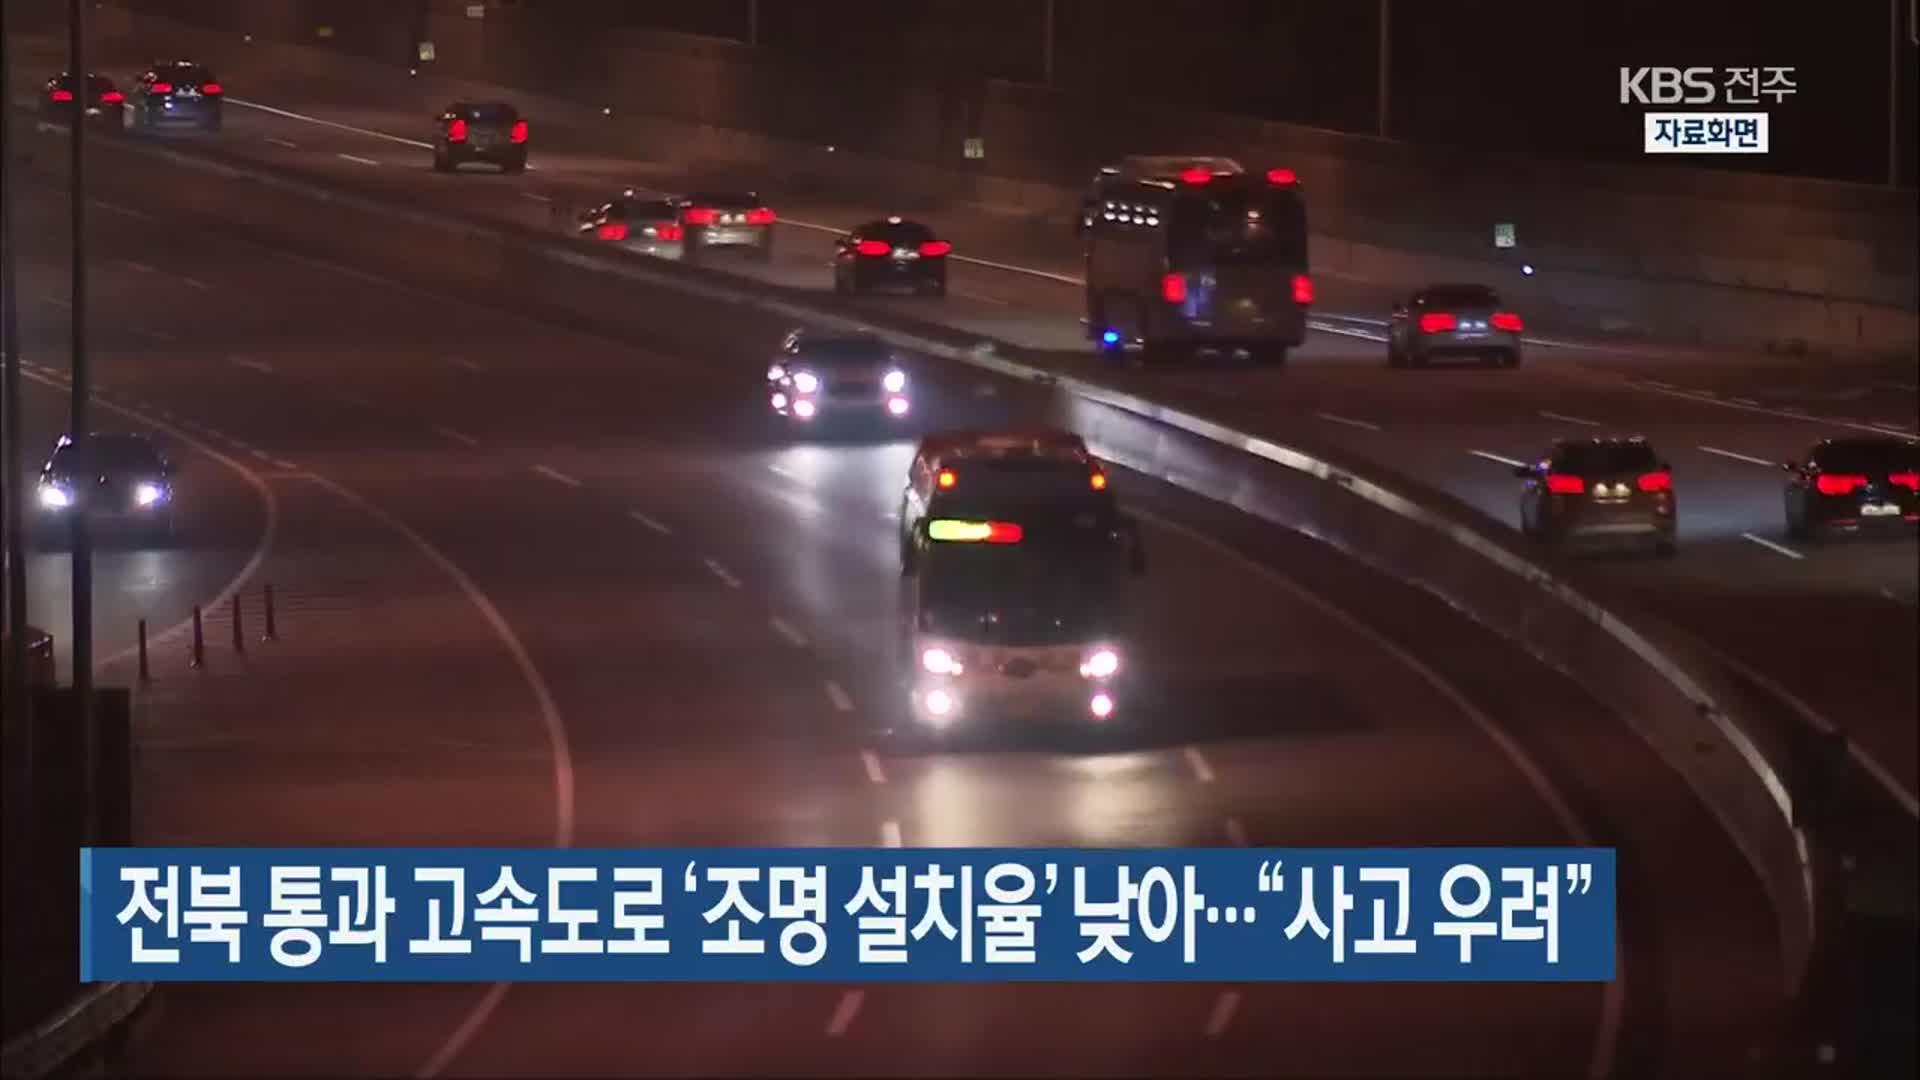 전북 통과 고속도로 ‘조명 설치율’ 낮아…“사고 우려”